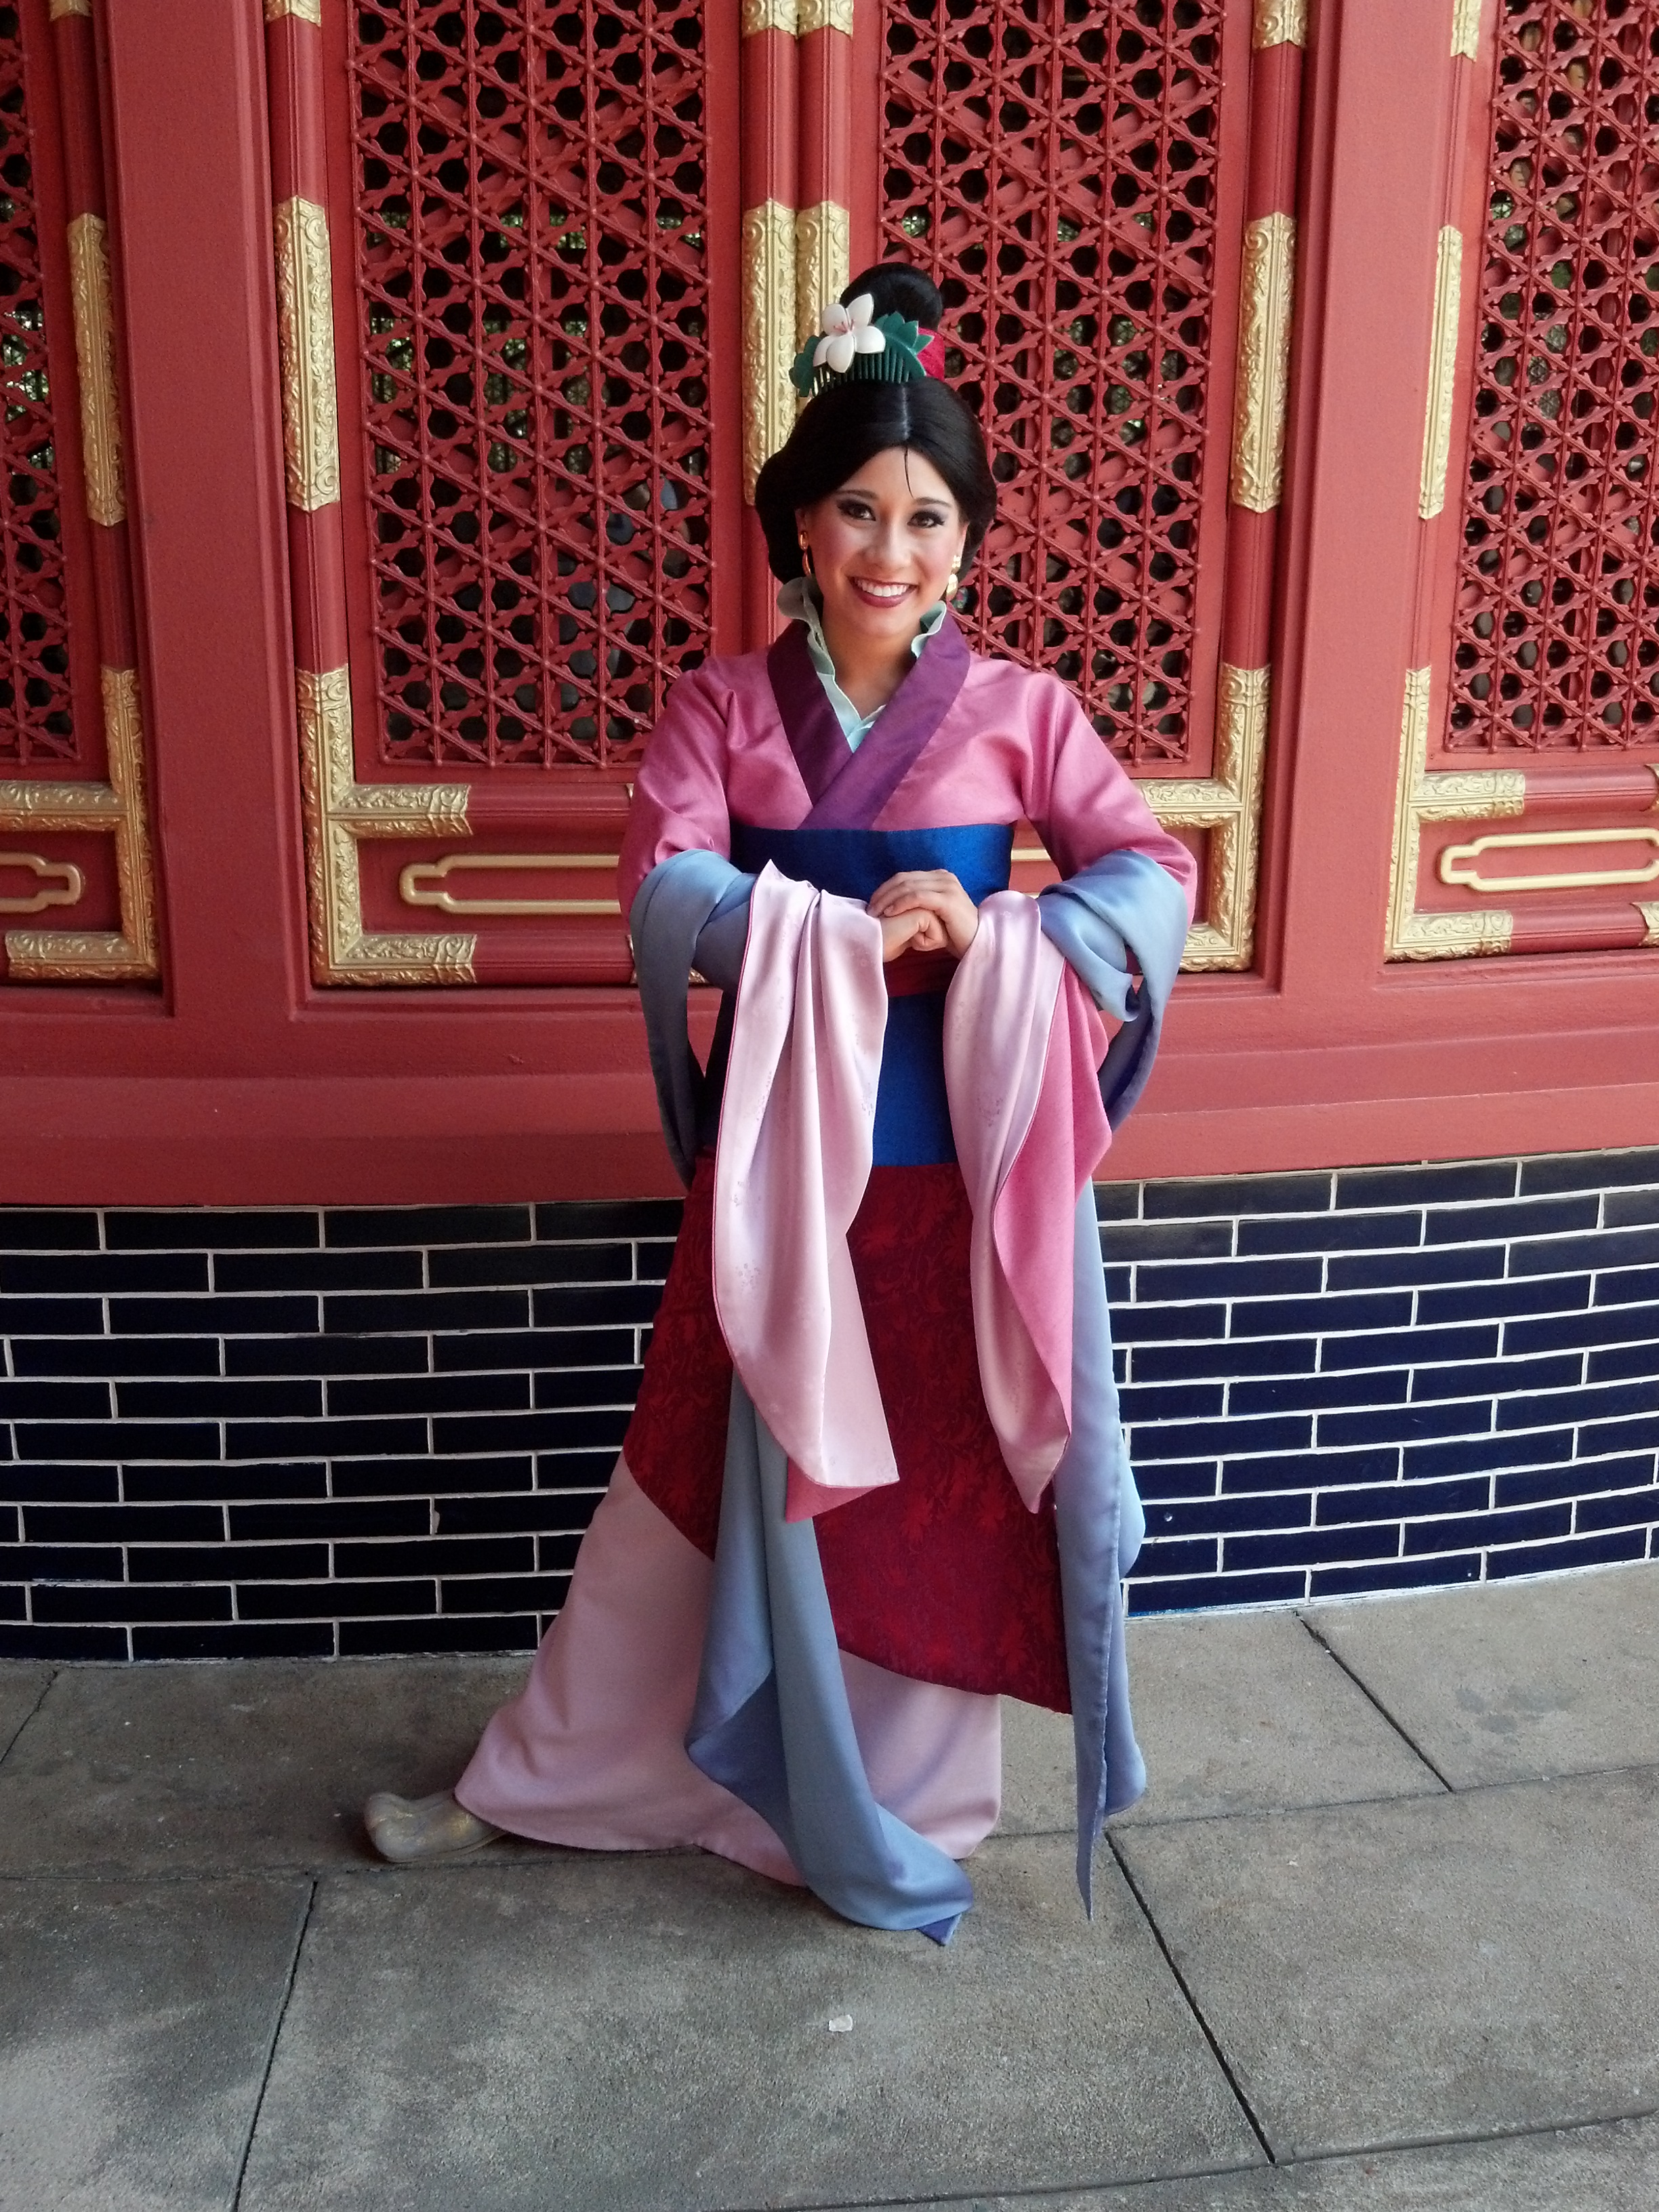 Mulan in China Pavilion at Epcot